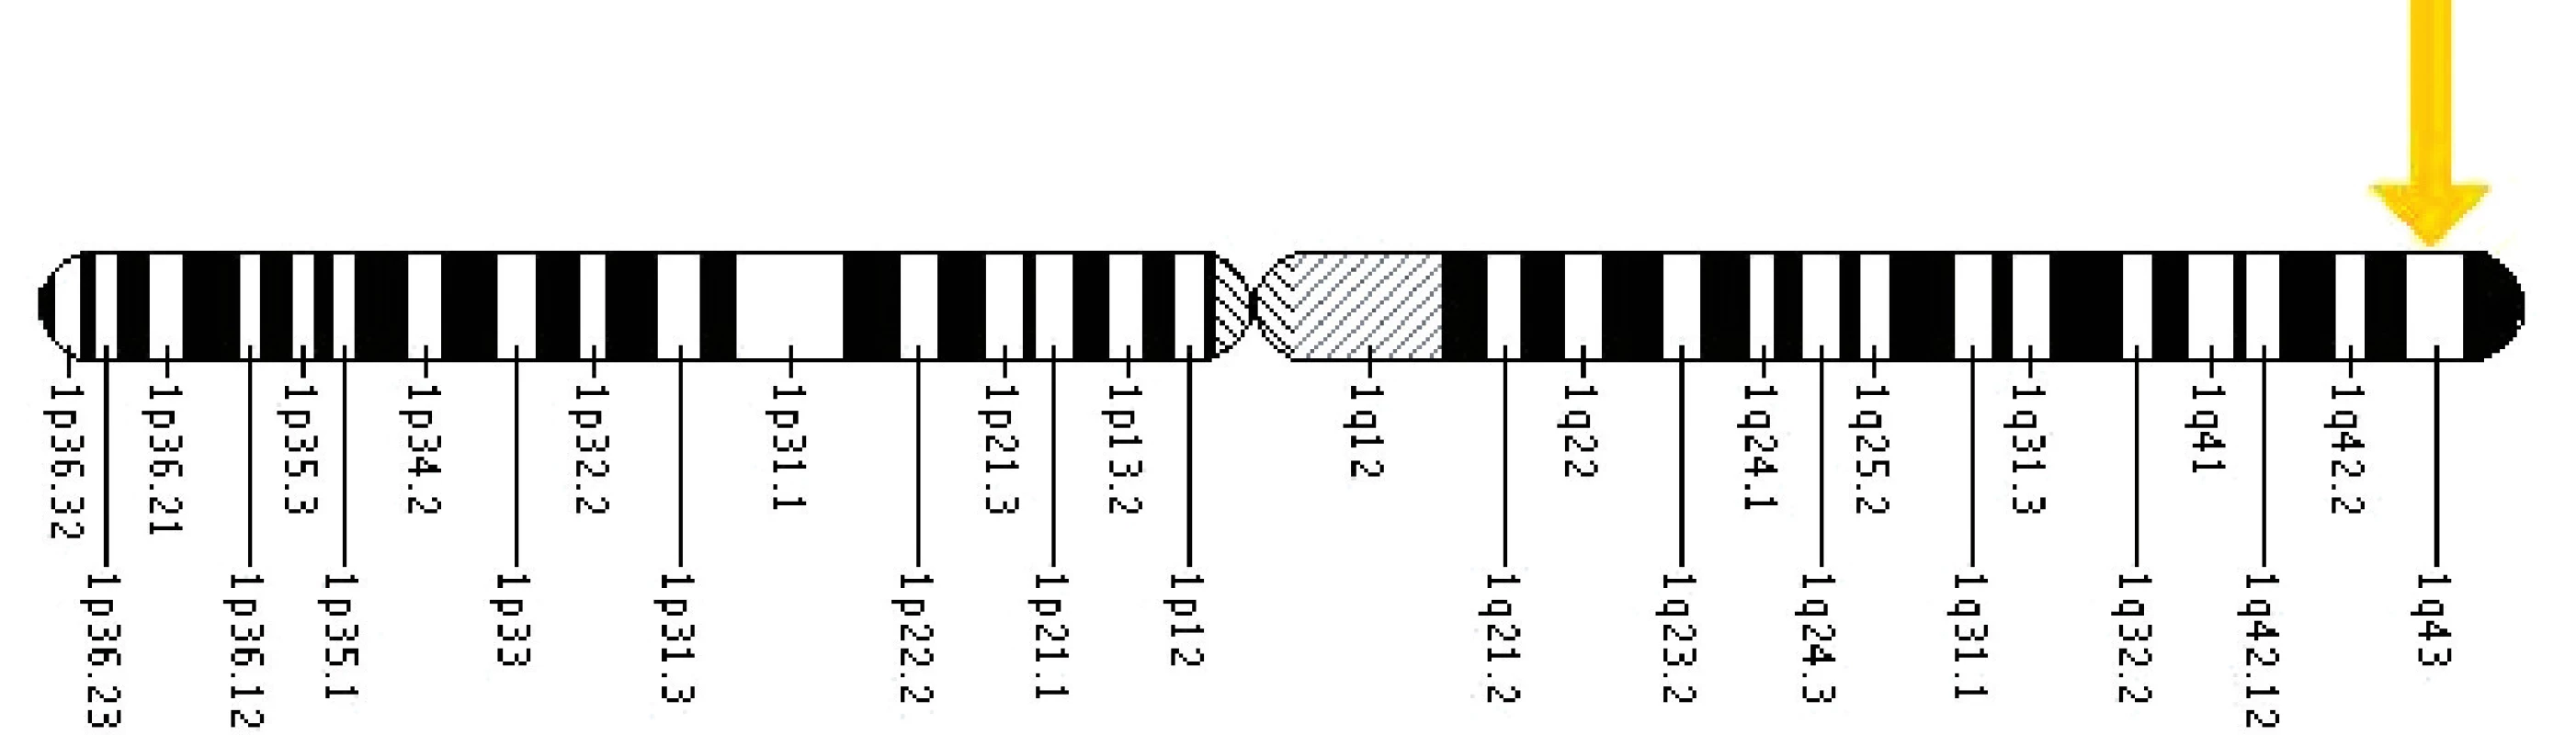 Umístění genu EDA na X chromozomu.